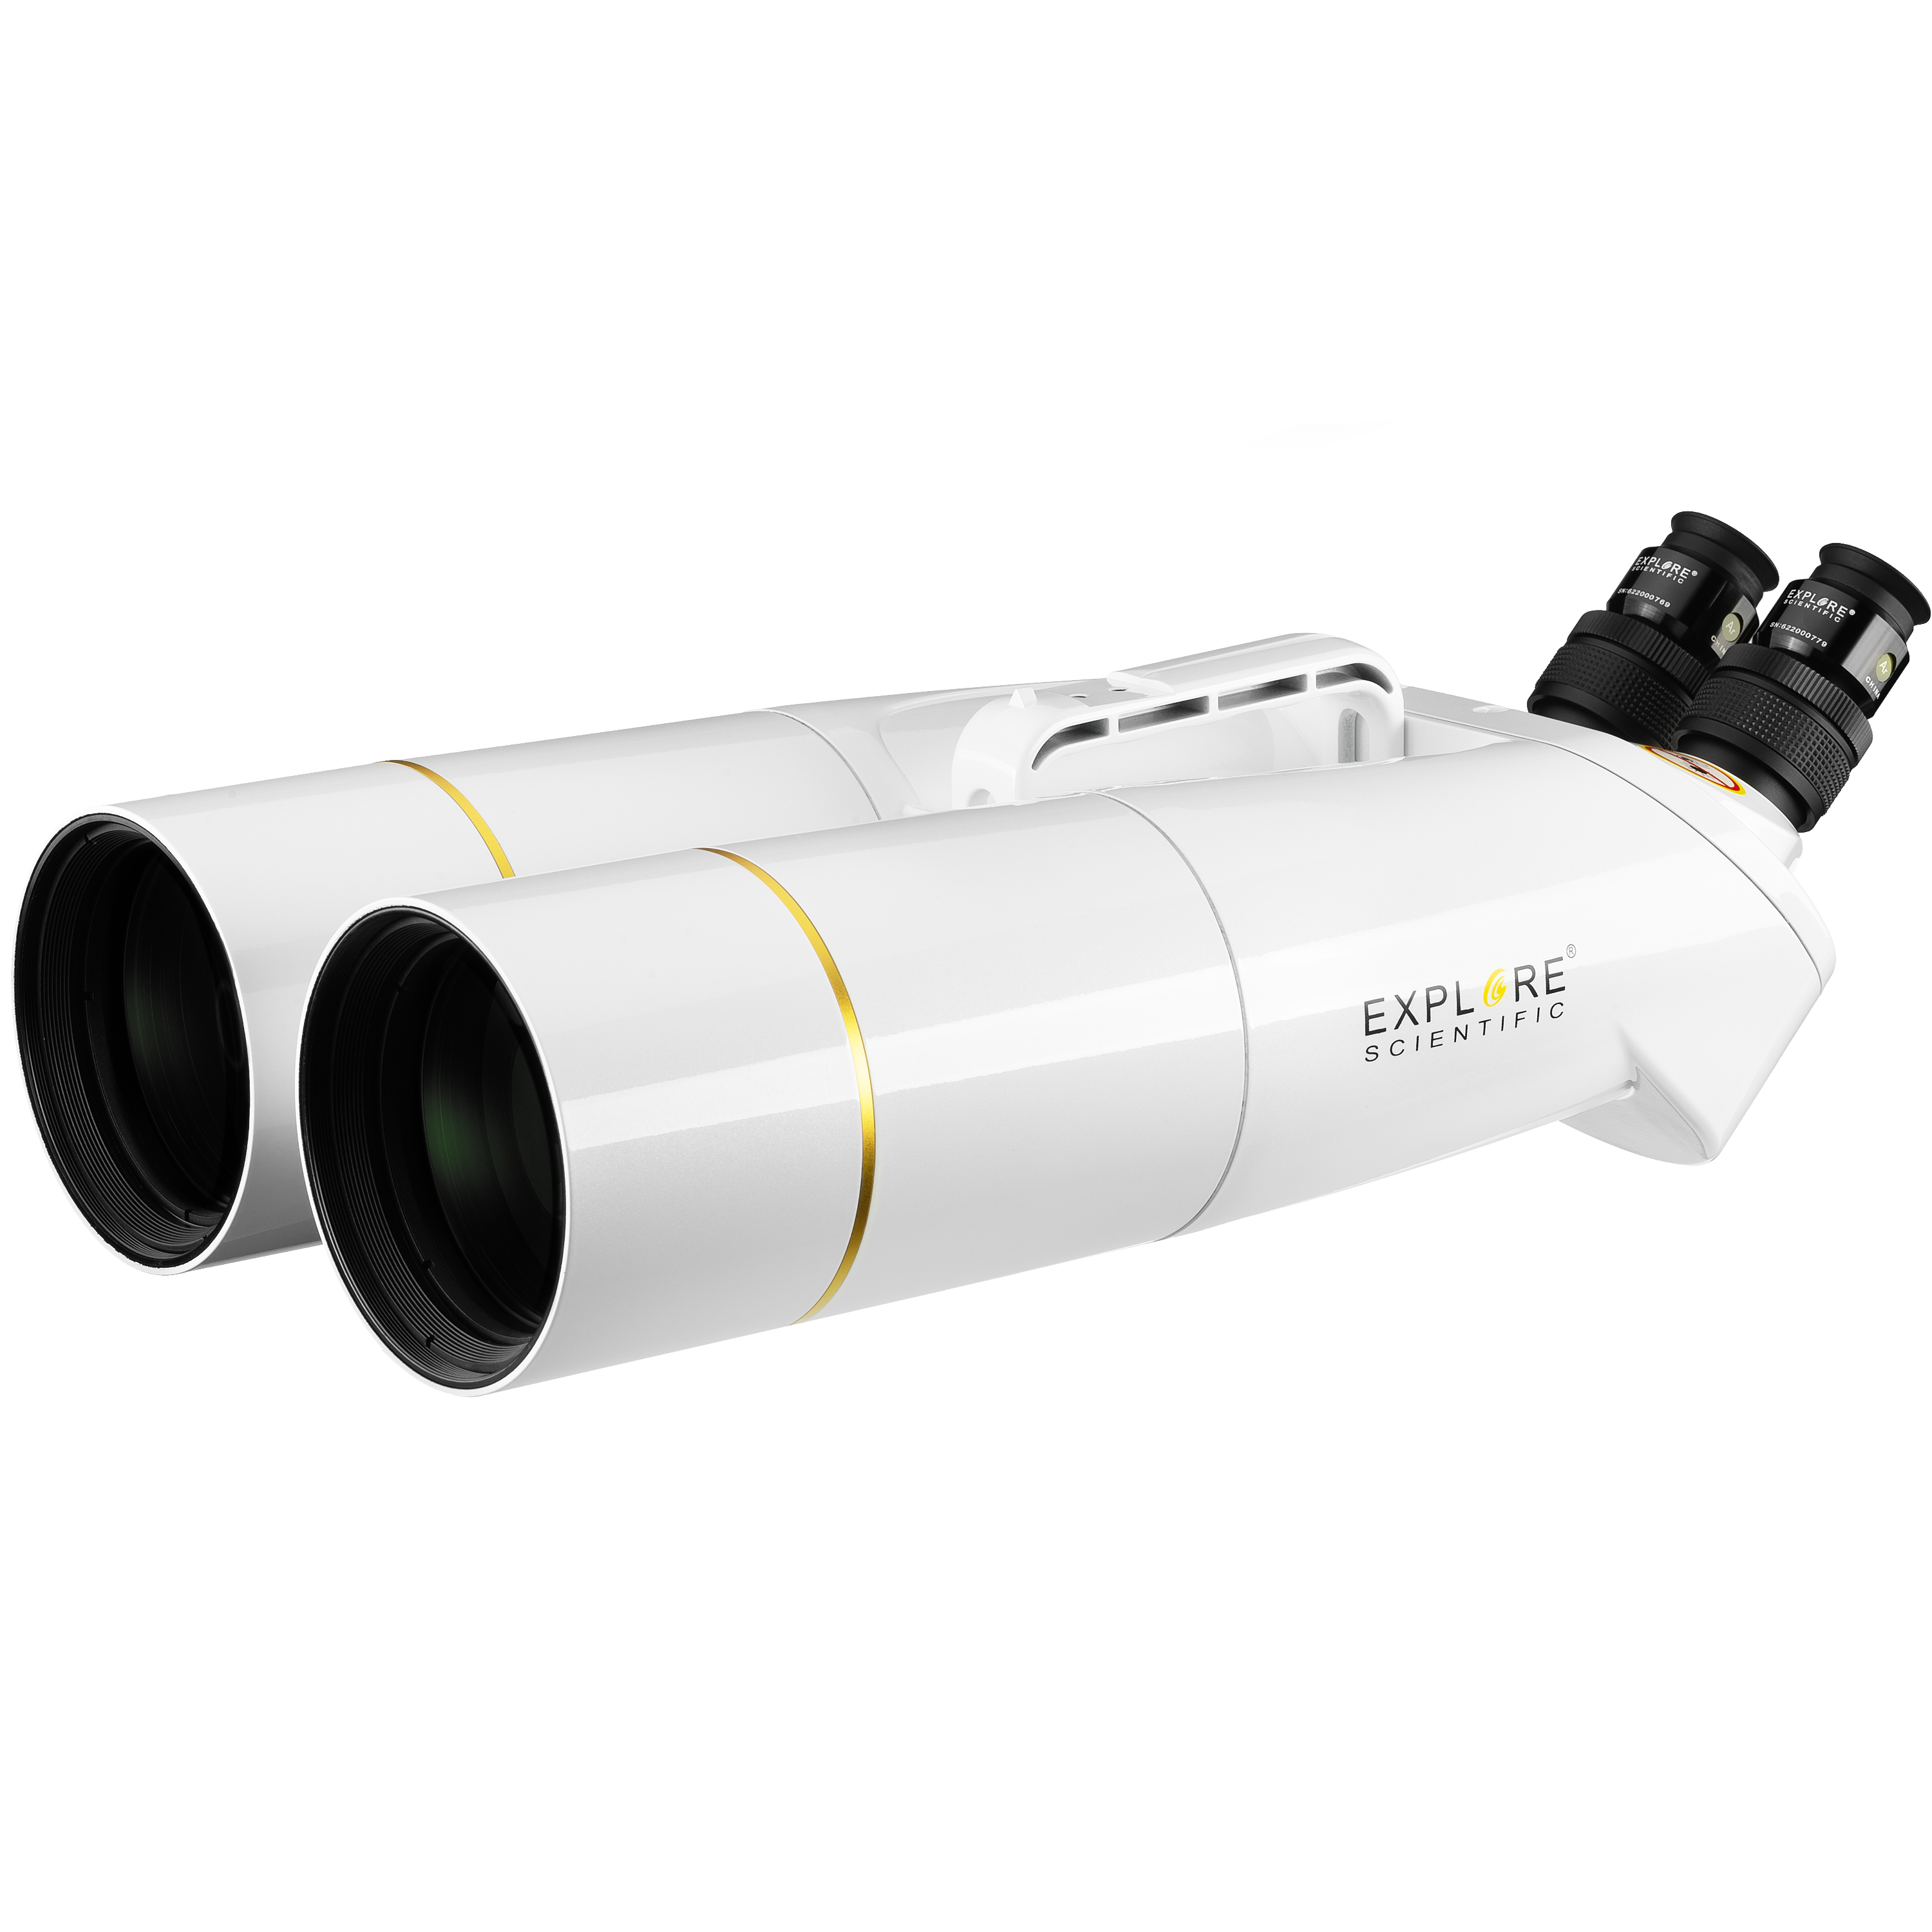 Explore Scientific 92° LER oculaire télescopique avec revêtement Multicouche EMD de qualité supérieure étanche avec garnissage en gaz de Protection Argon 